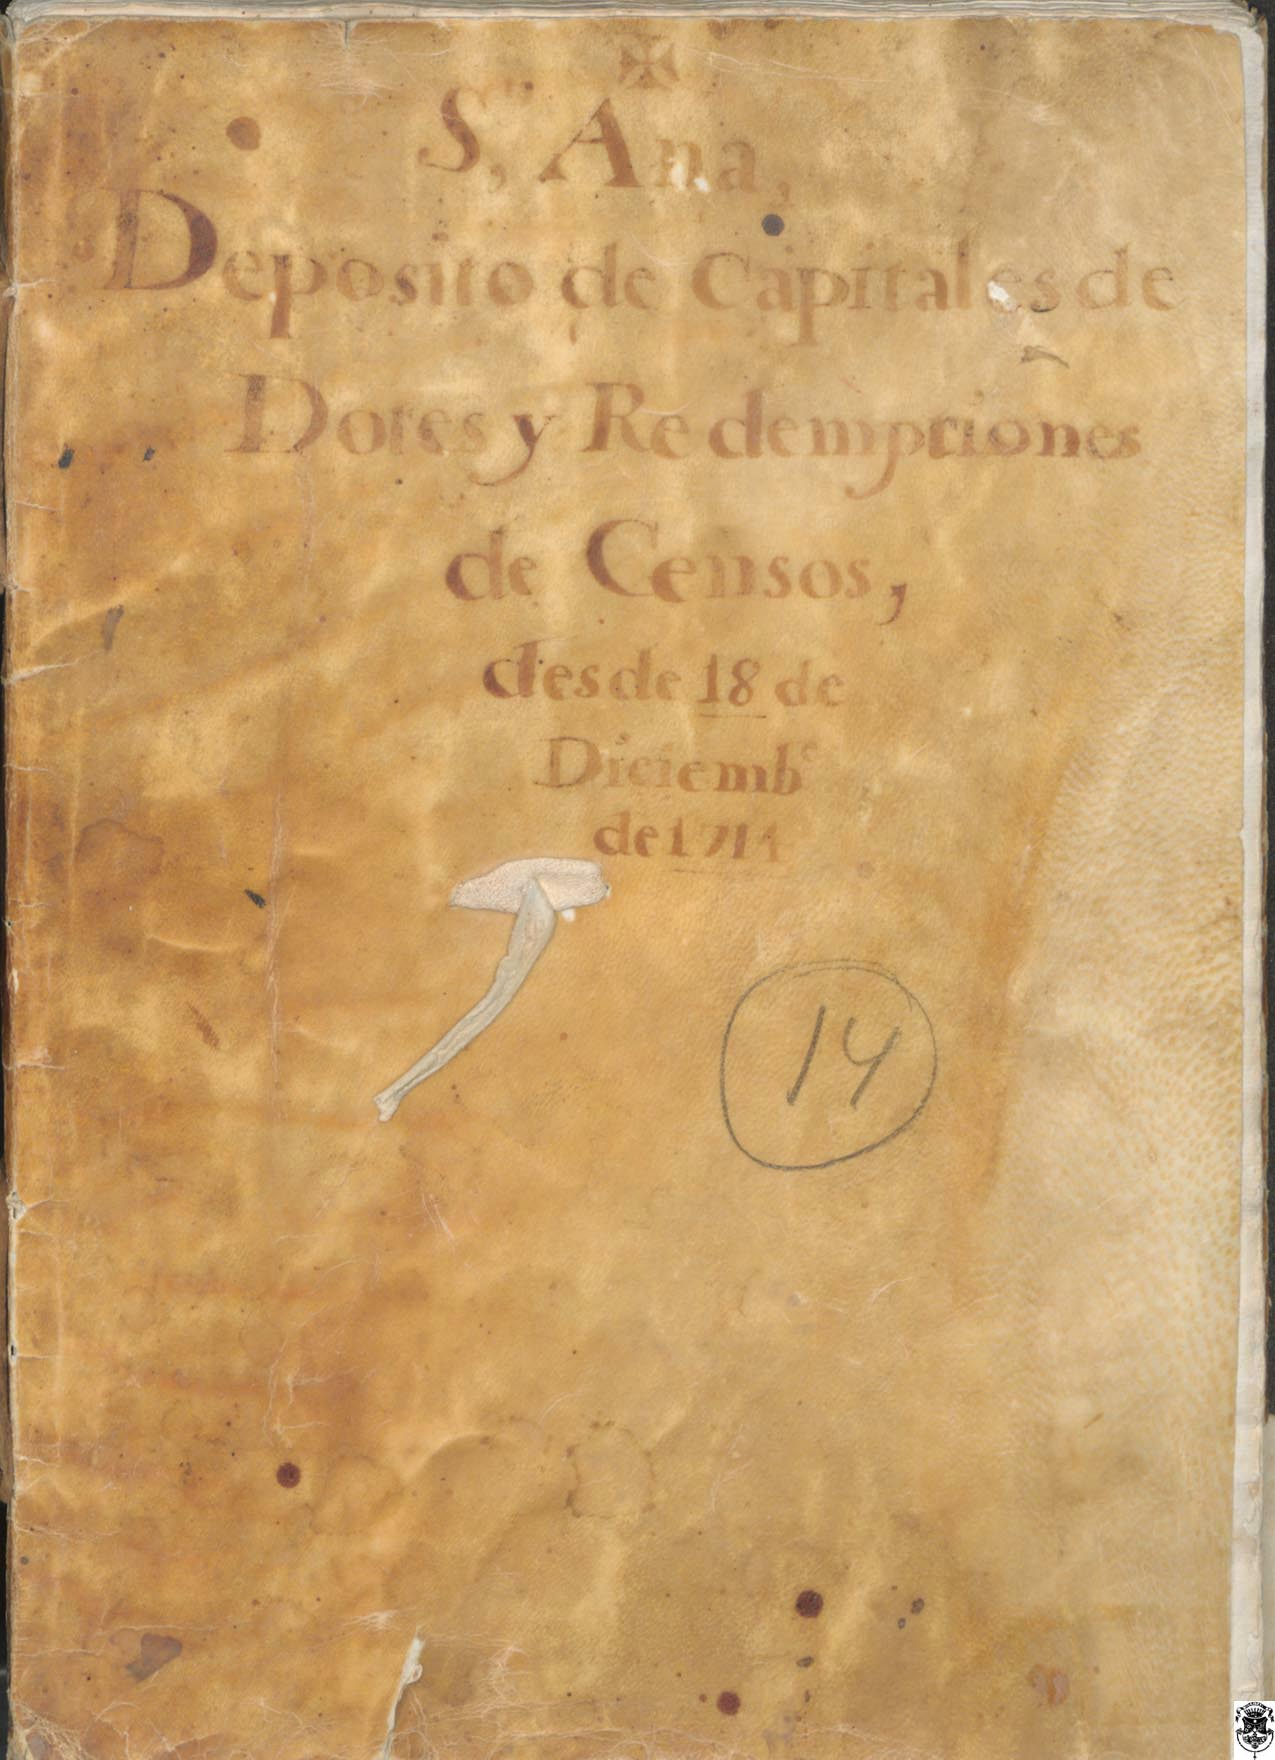 Libro de Depósito de Capitales de Dotes y Redenciones de Censos.